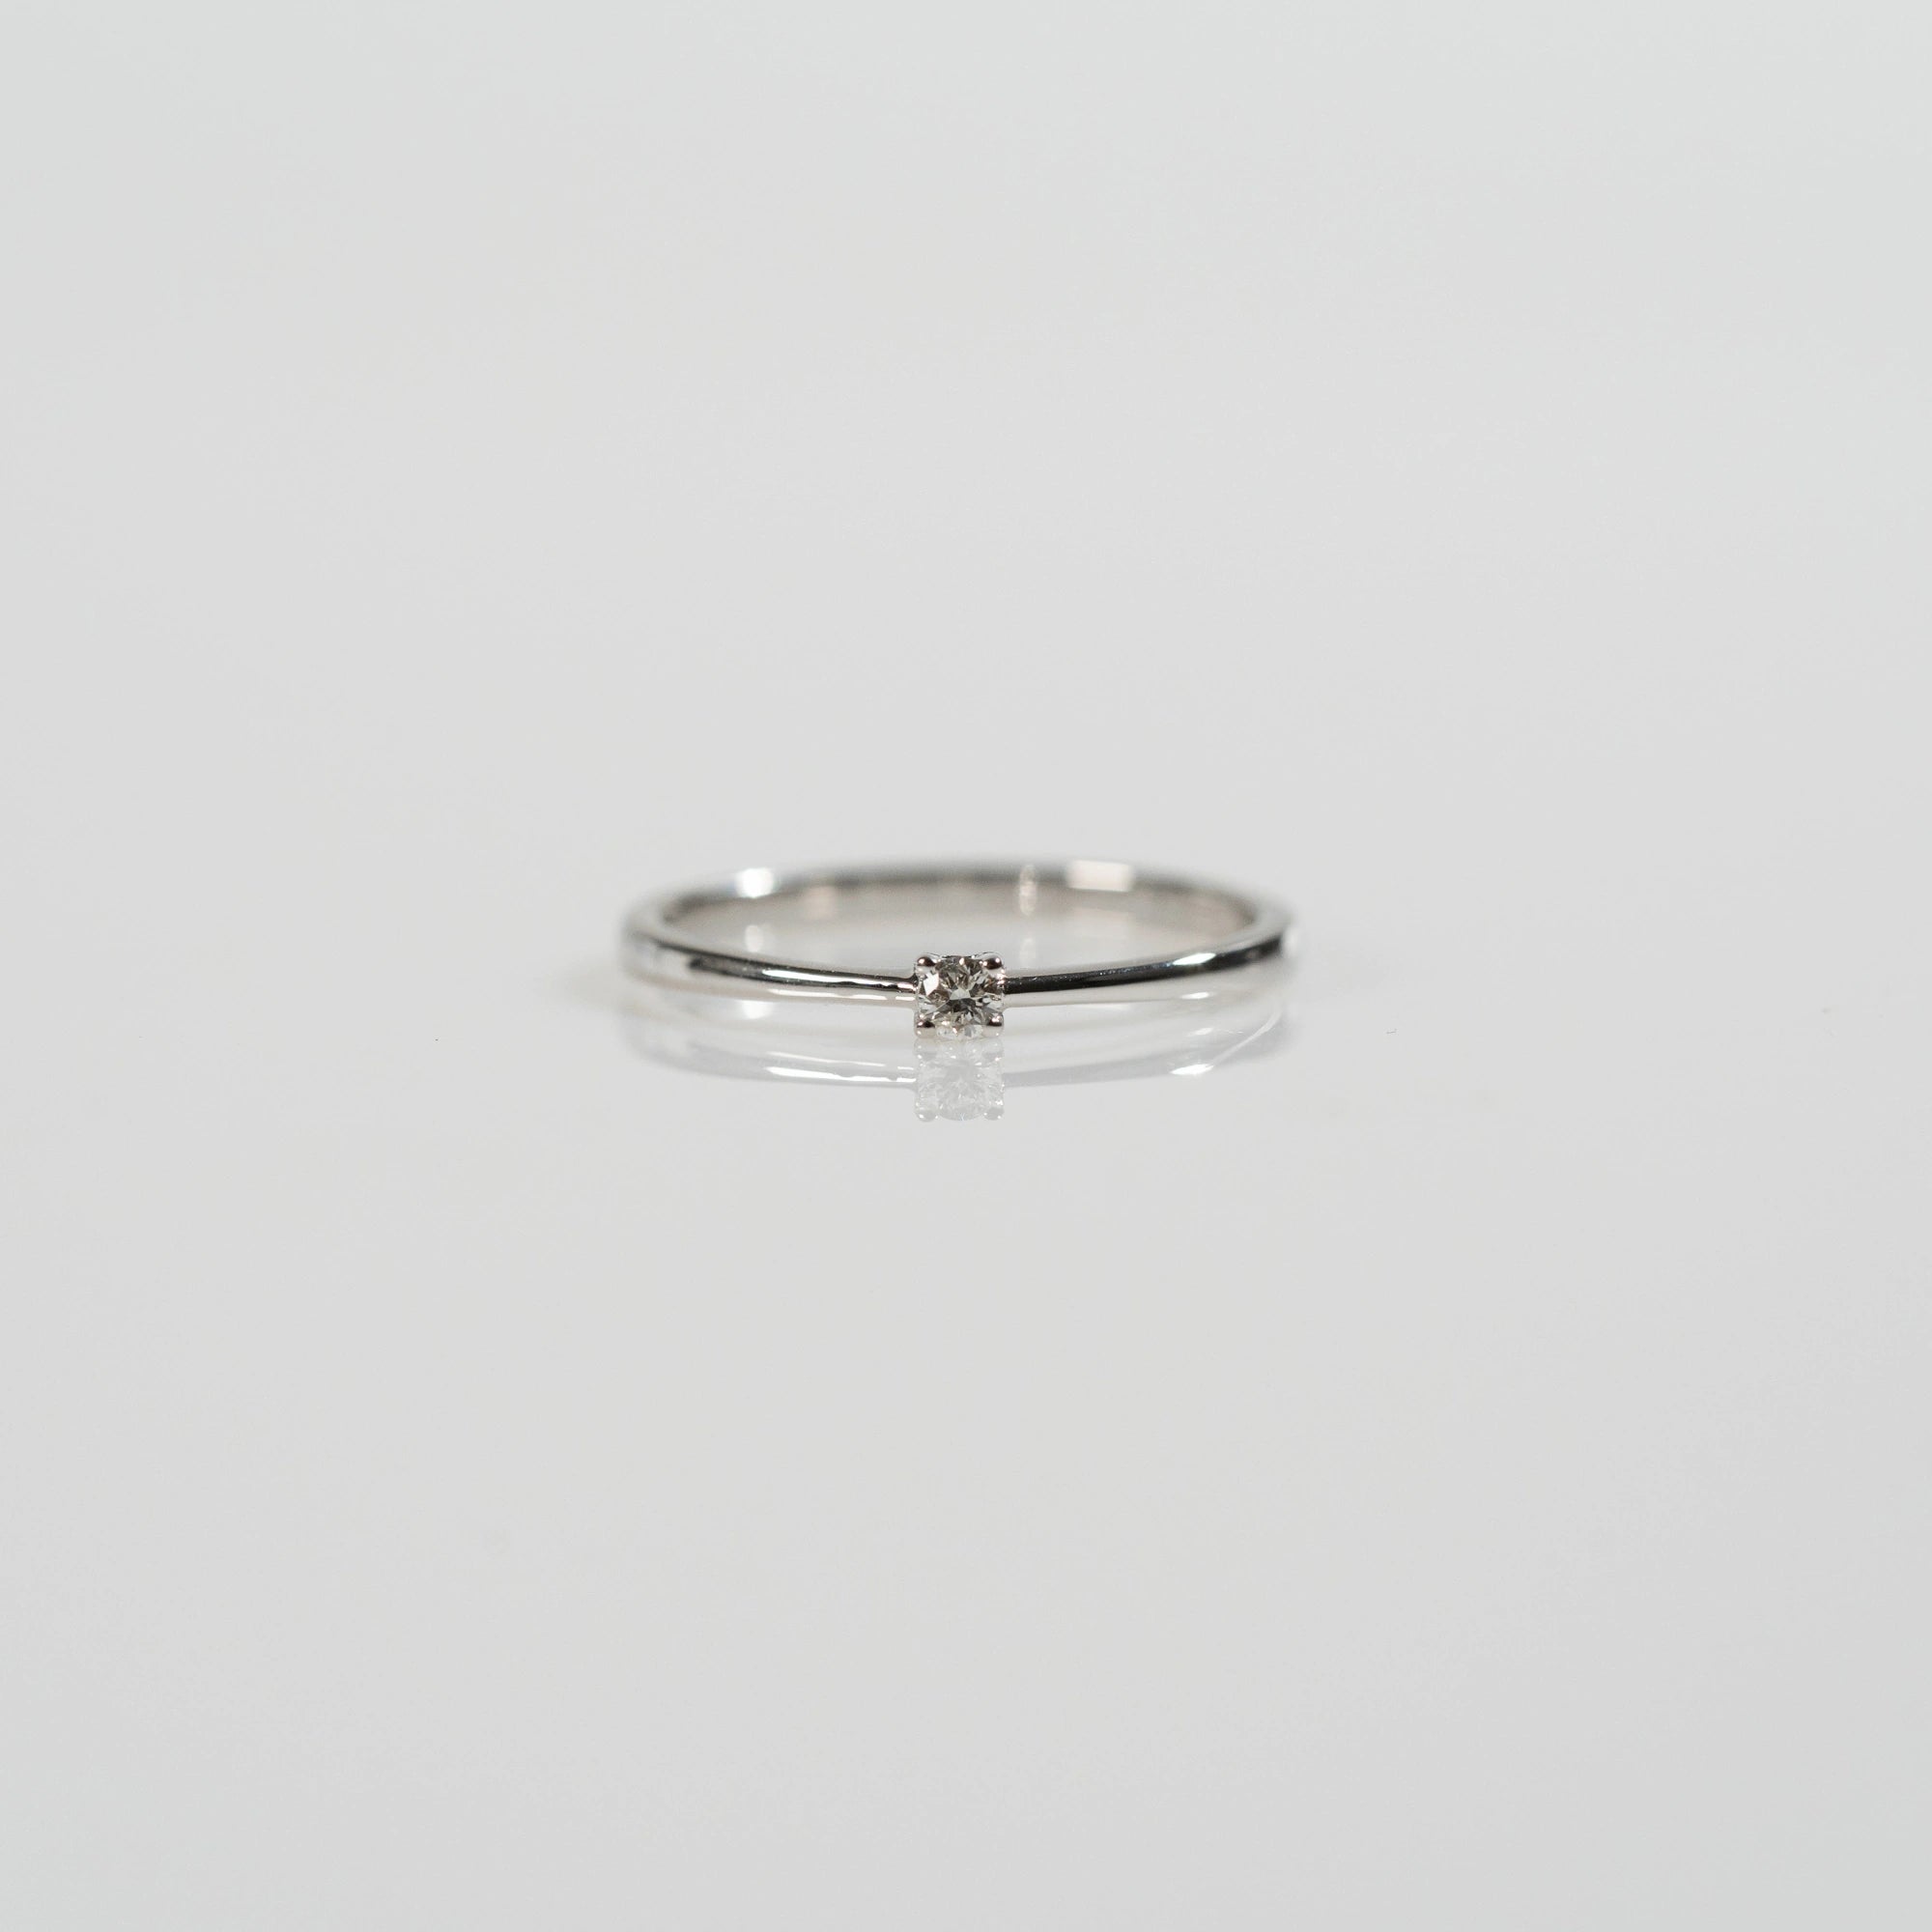 Frontale Ansicht des Verlobungsrings "Forever" aus der Schmuckatelier Lang Collection mit einem in einer 4er Kappe gefassten Diamanten mit einem Gewicht von 0.1 Carat